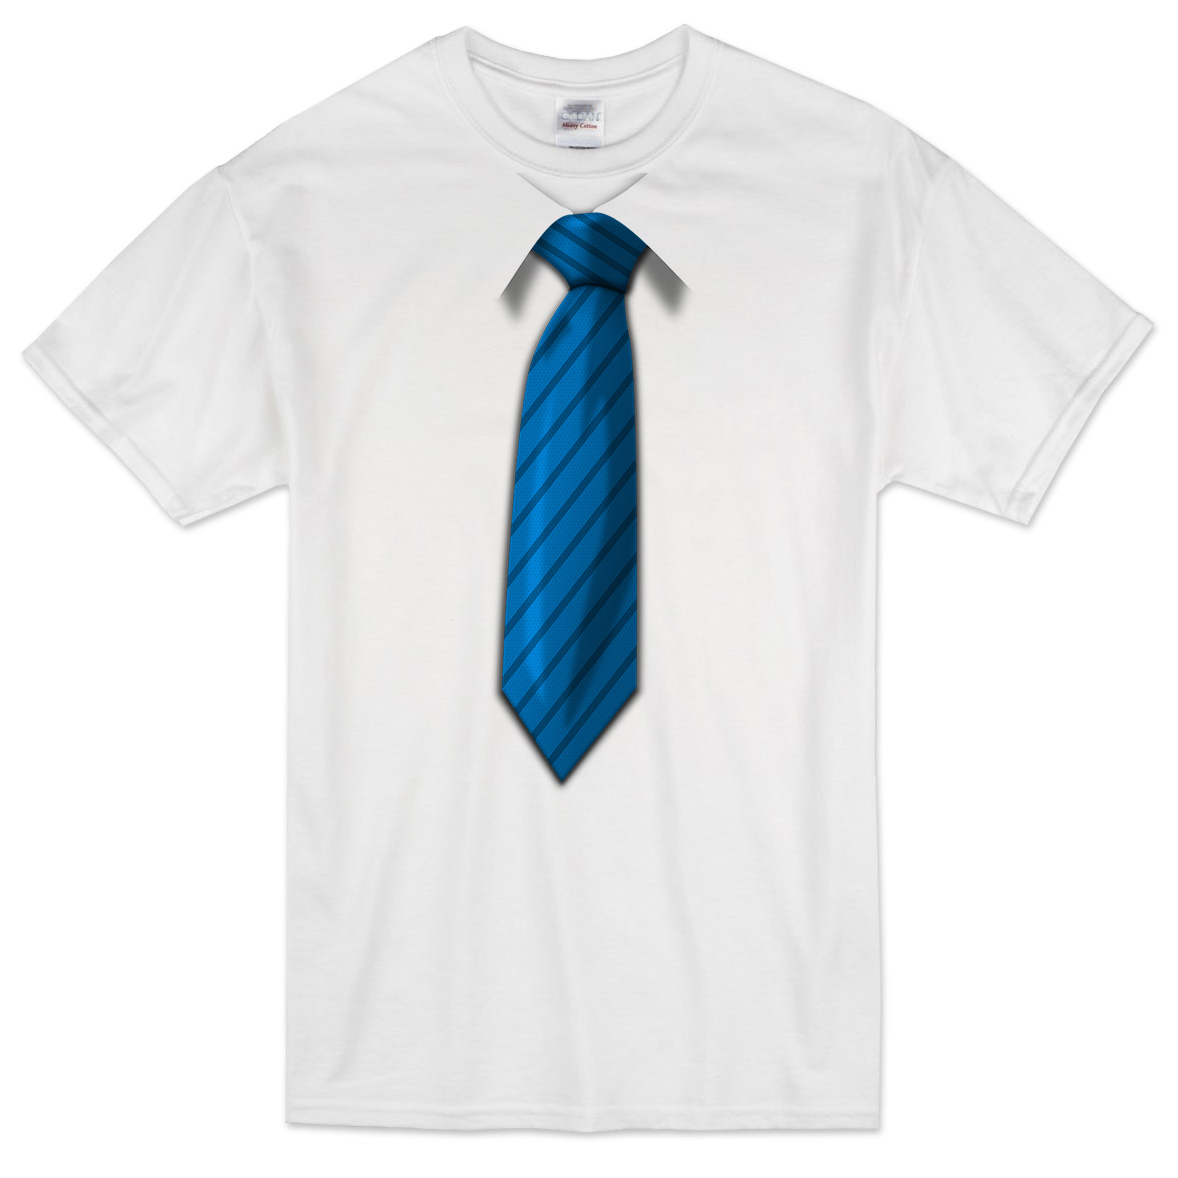 Футболка 3D галстук /синий/ фото 1